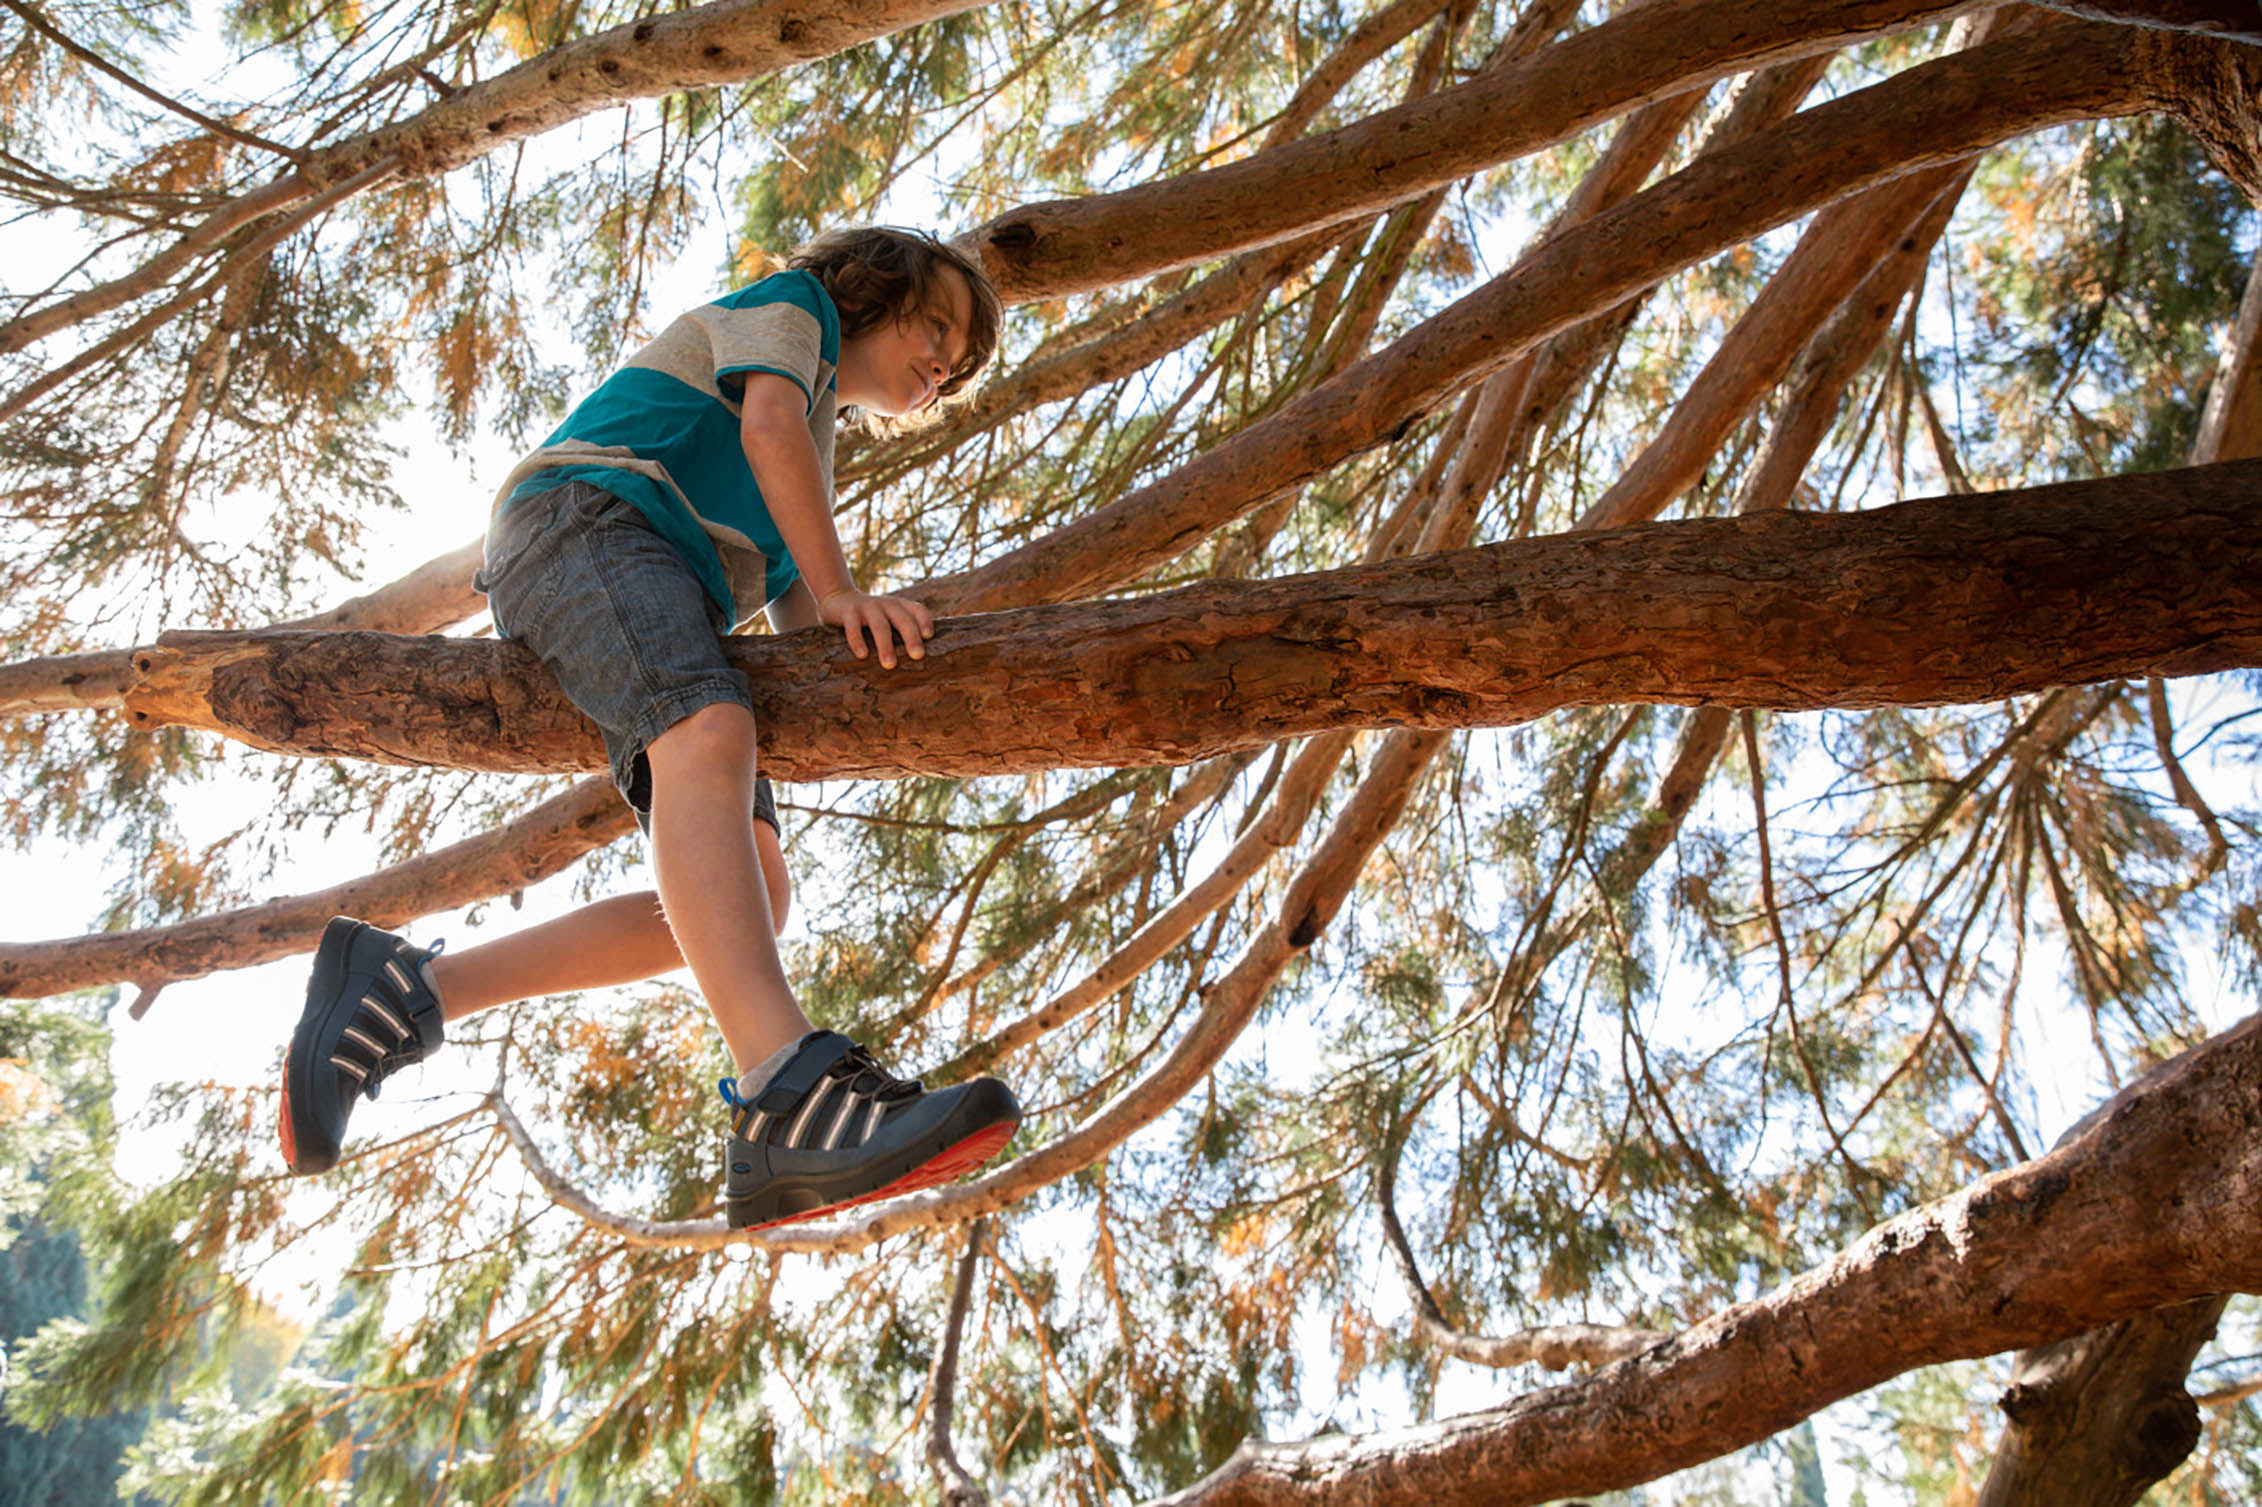 A child climbing a tree